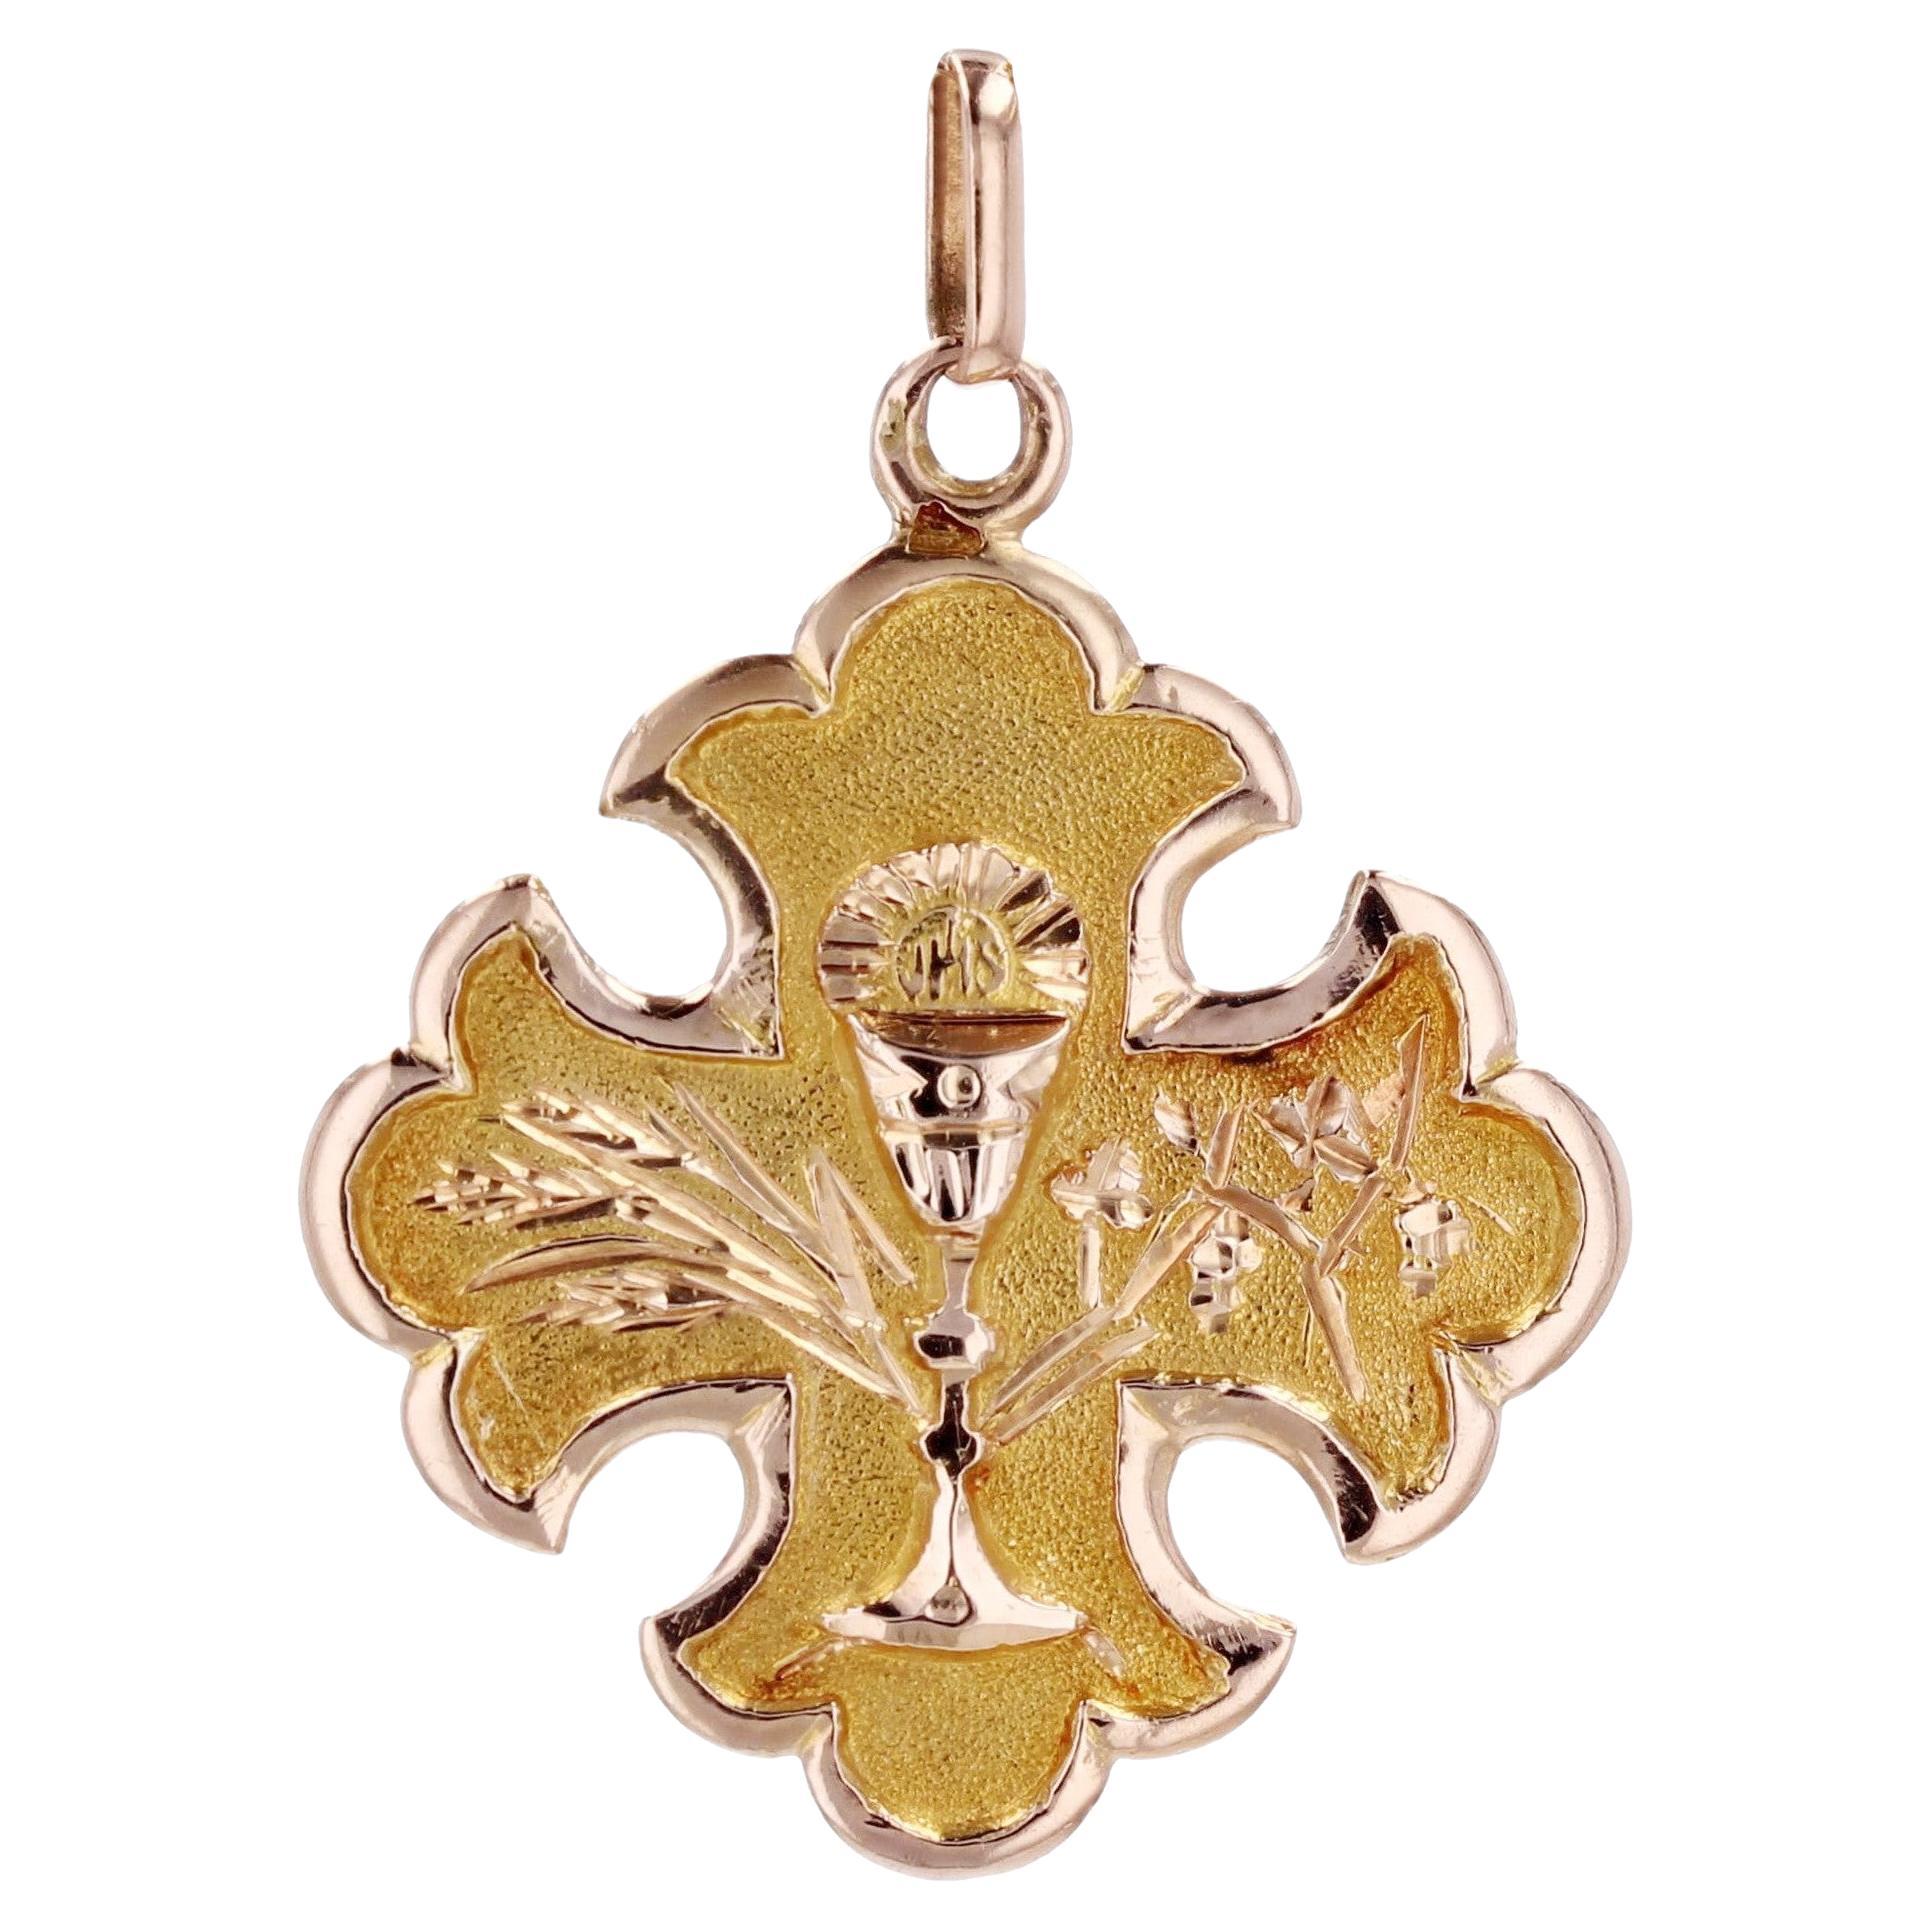 Pendentif Croix Fleur-de-lysee en or rose 18 carats du 19e siècle français